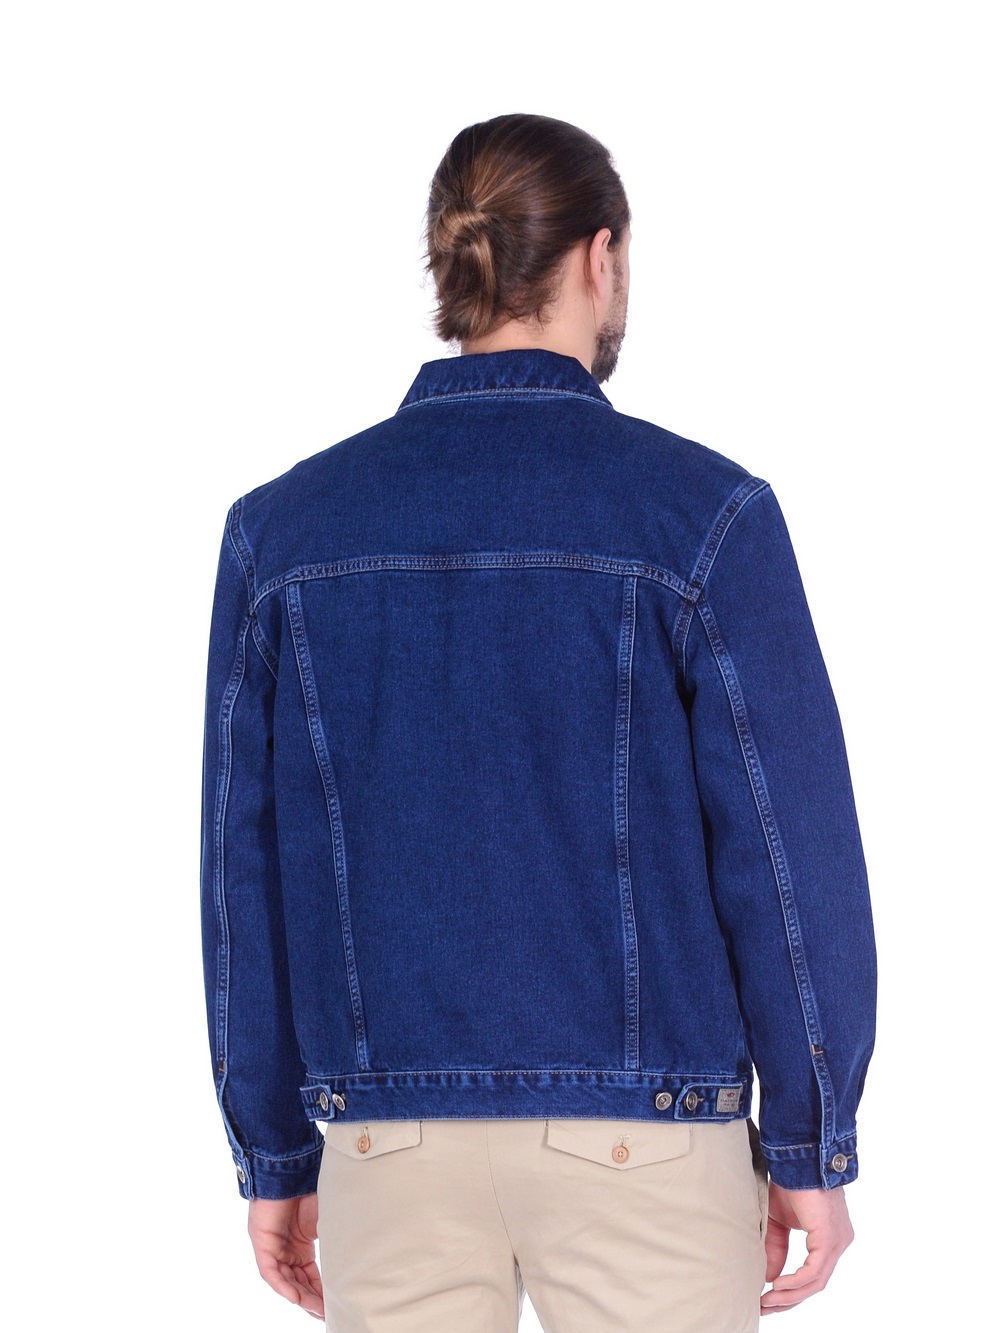 Джинсовая куртка мужская Dairos GD5060502 синяя XL